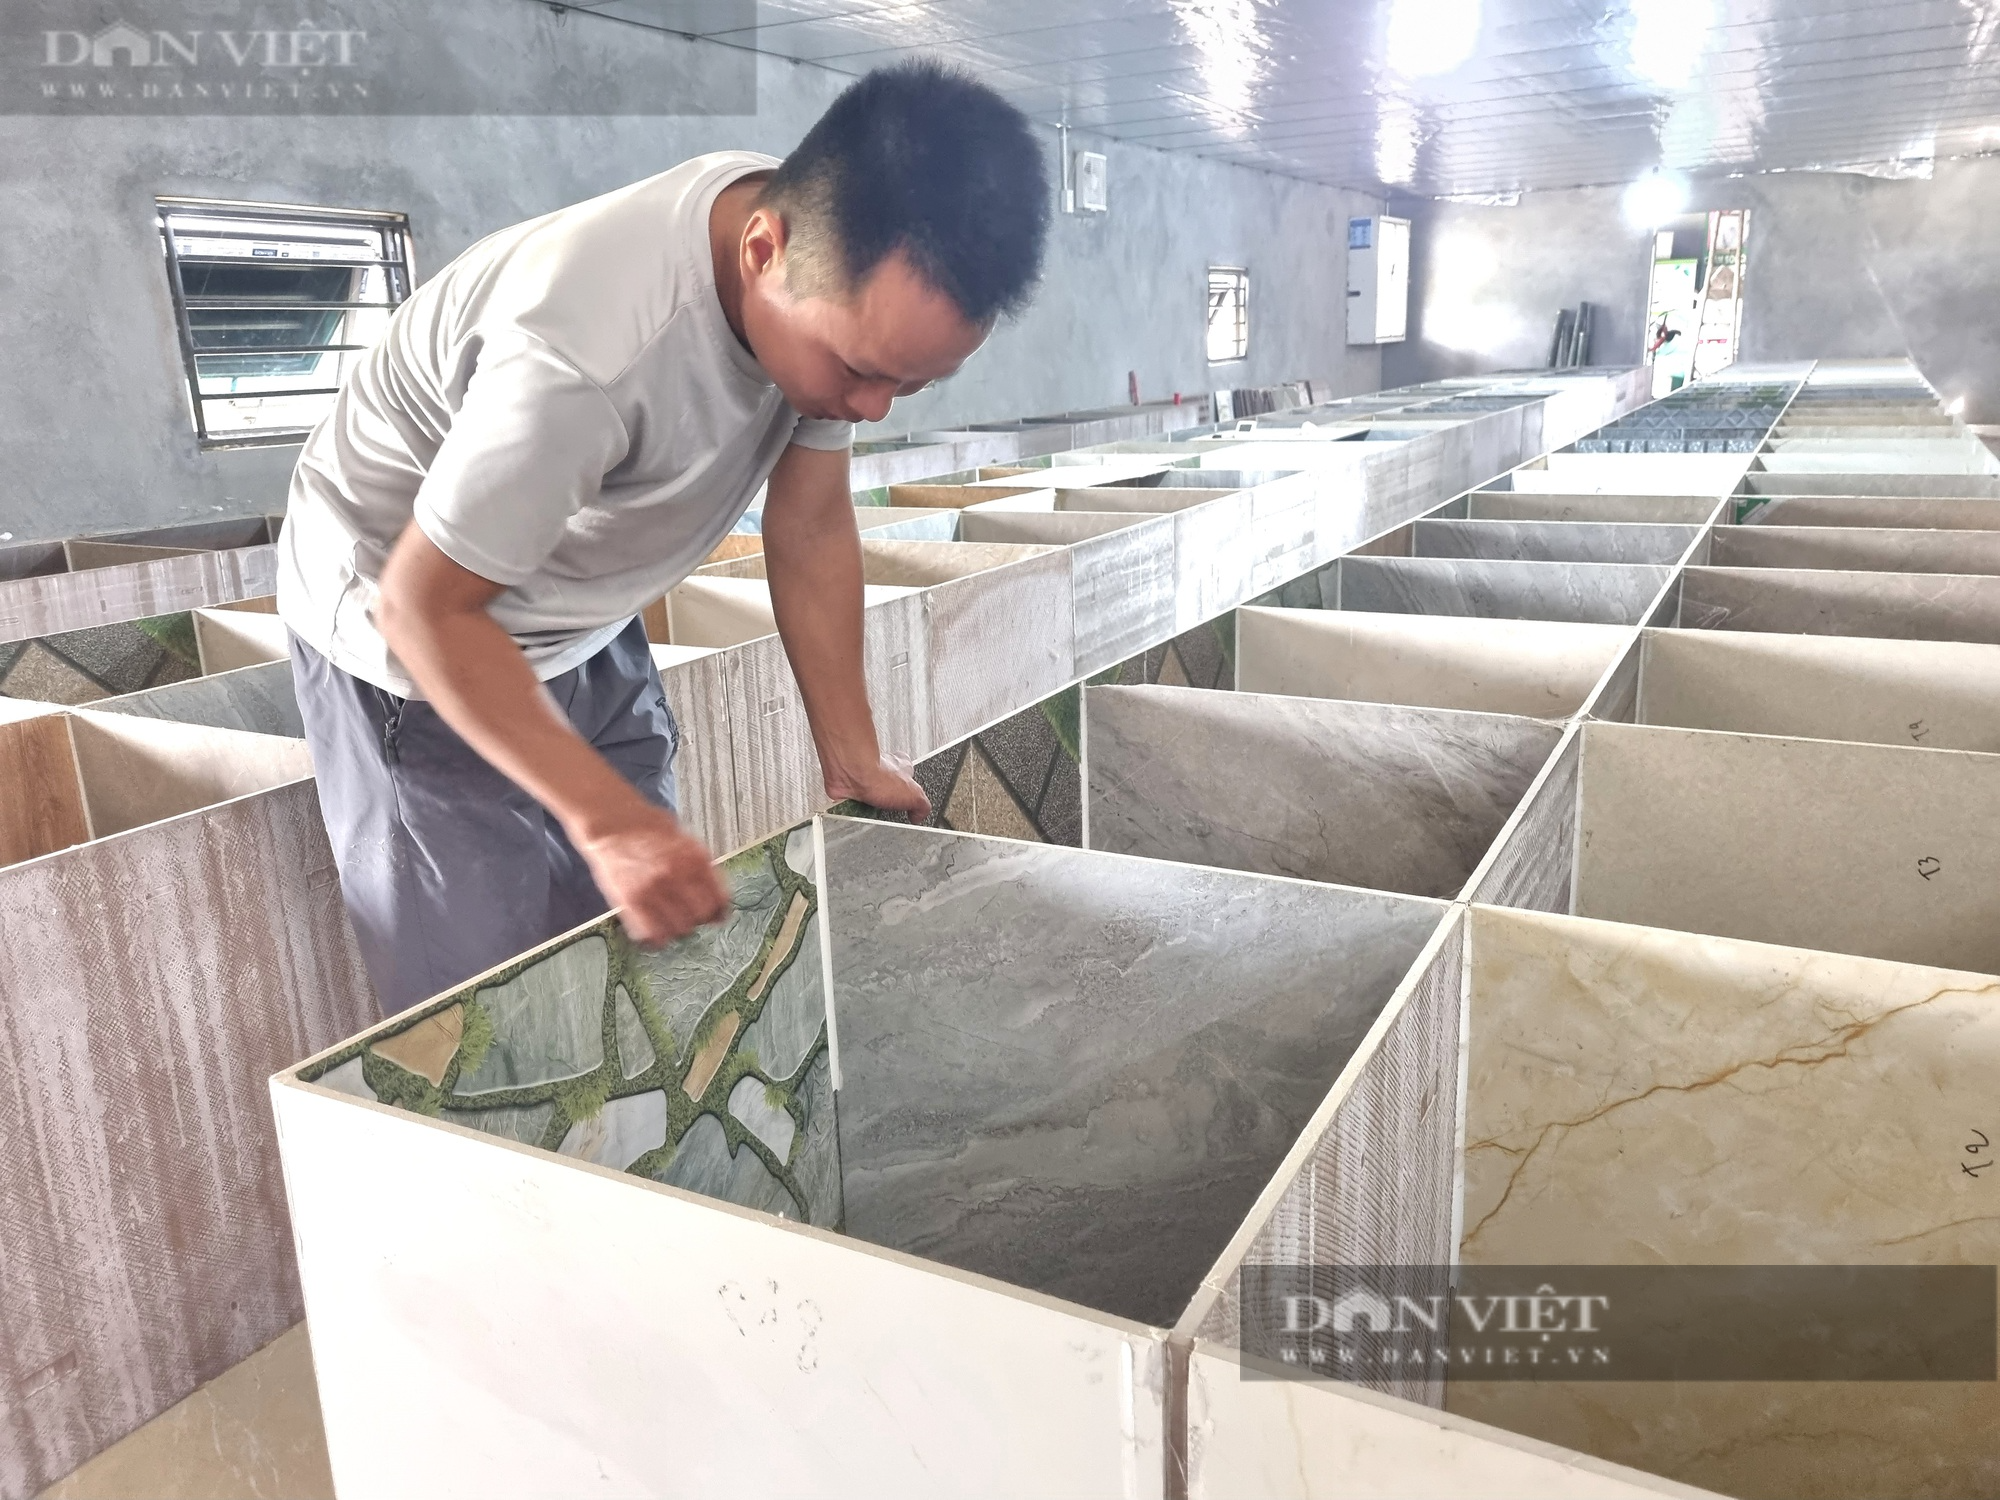 Bỏ nghề kỹ sư xây dựng, 9X Ninh Bình về quê nuôi con dúi mốc lãi 15 triệu đồng/tháng - Ảnh 6.